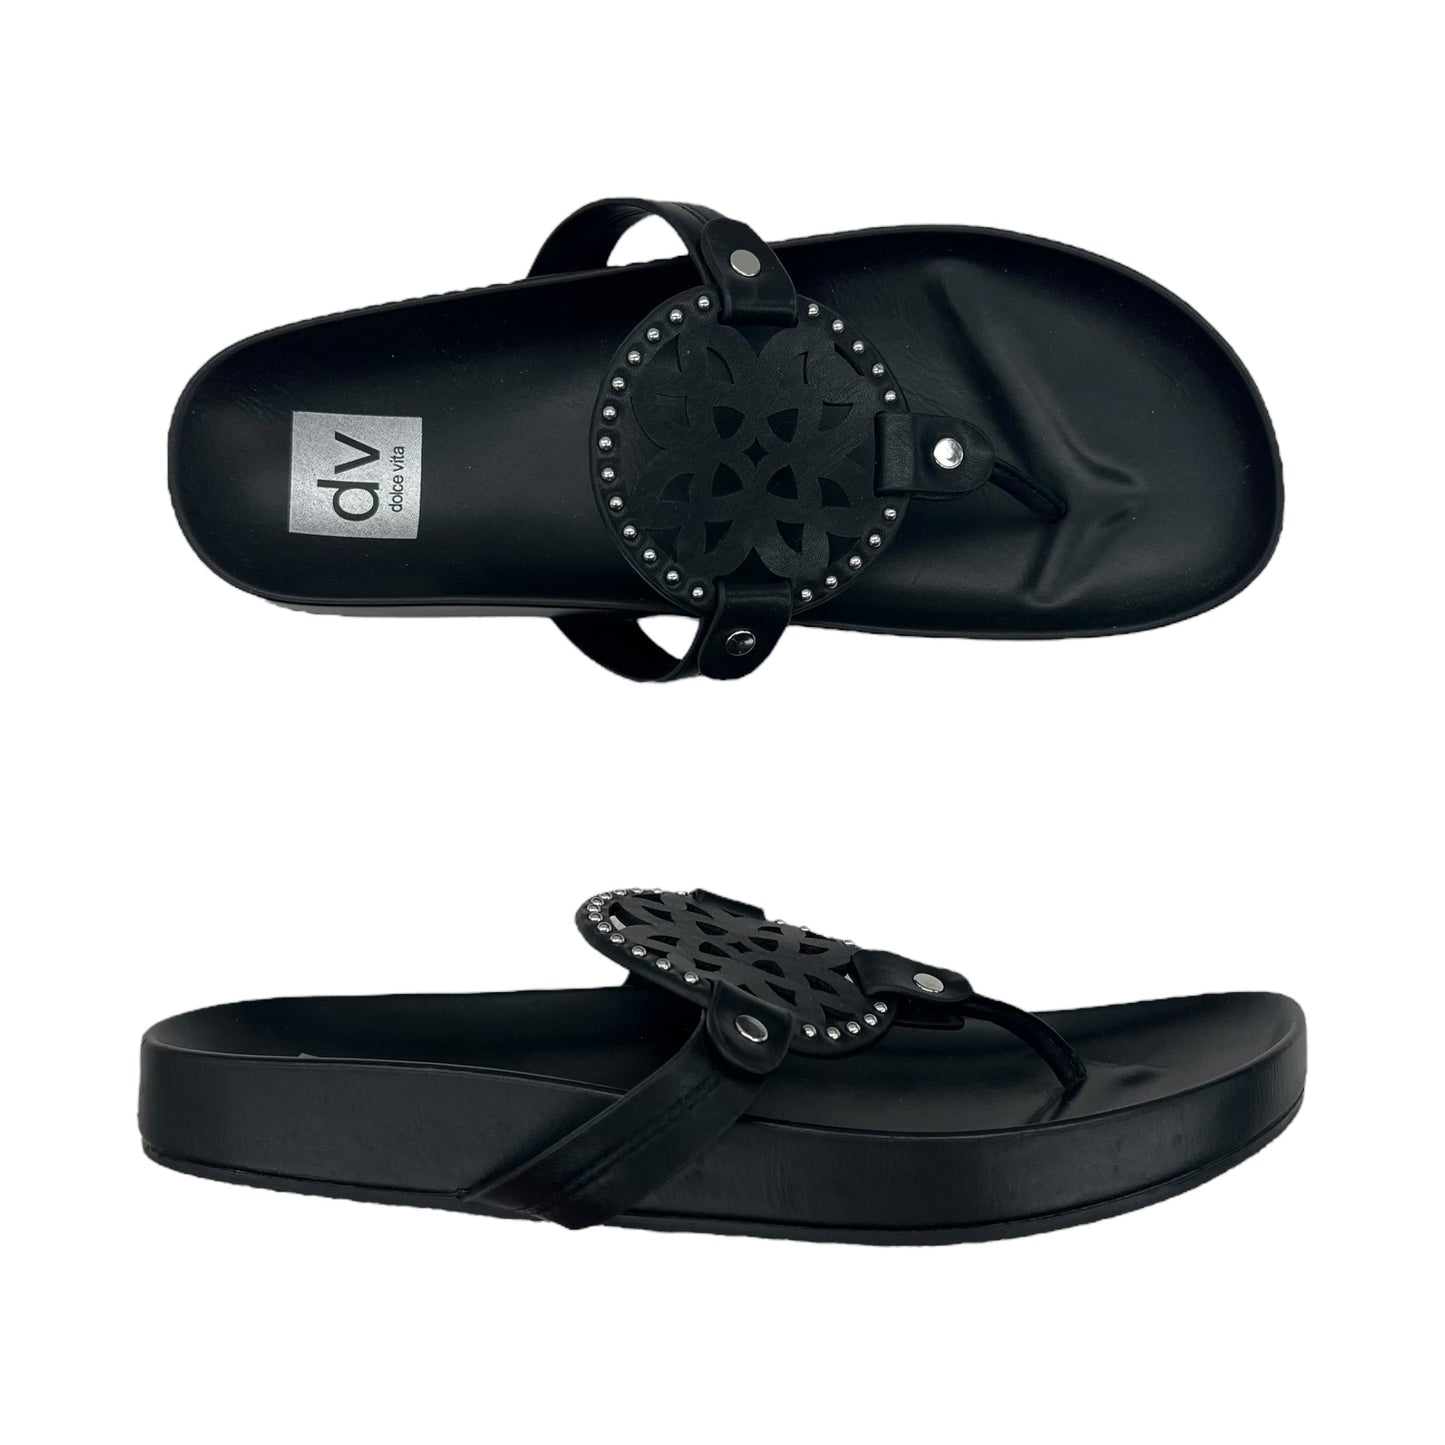 Black Sandals Flip Flops Dolce Vita, Size 8